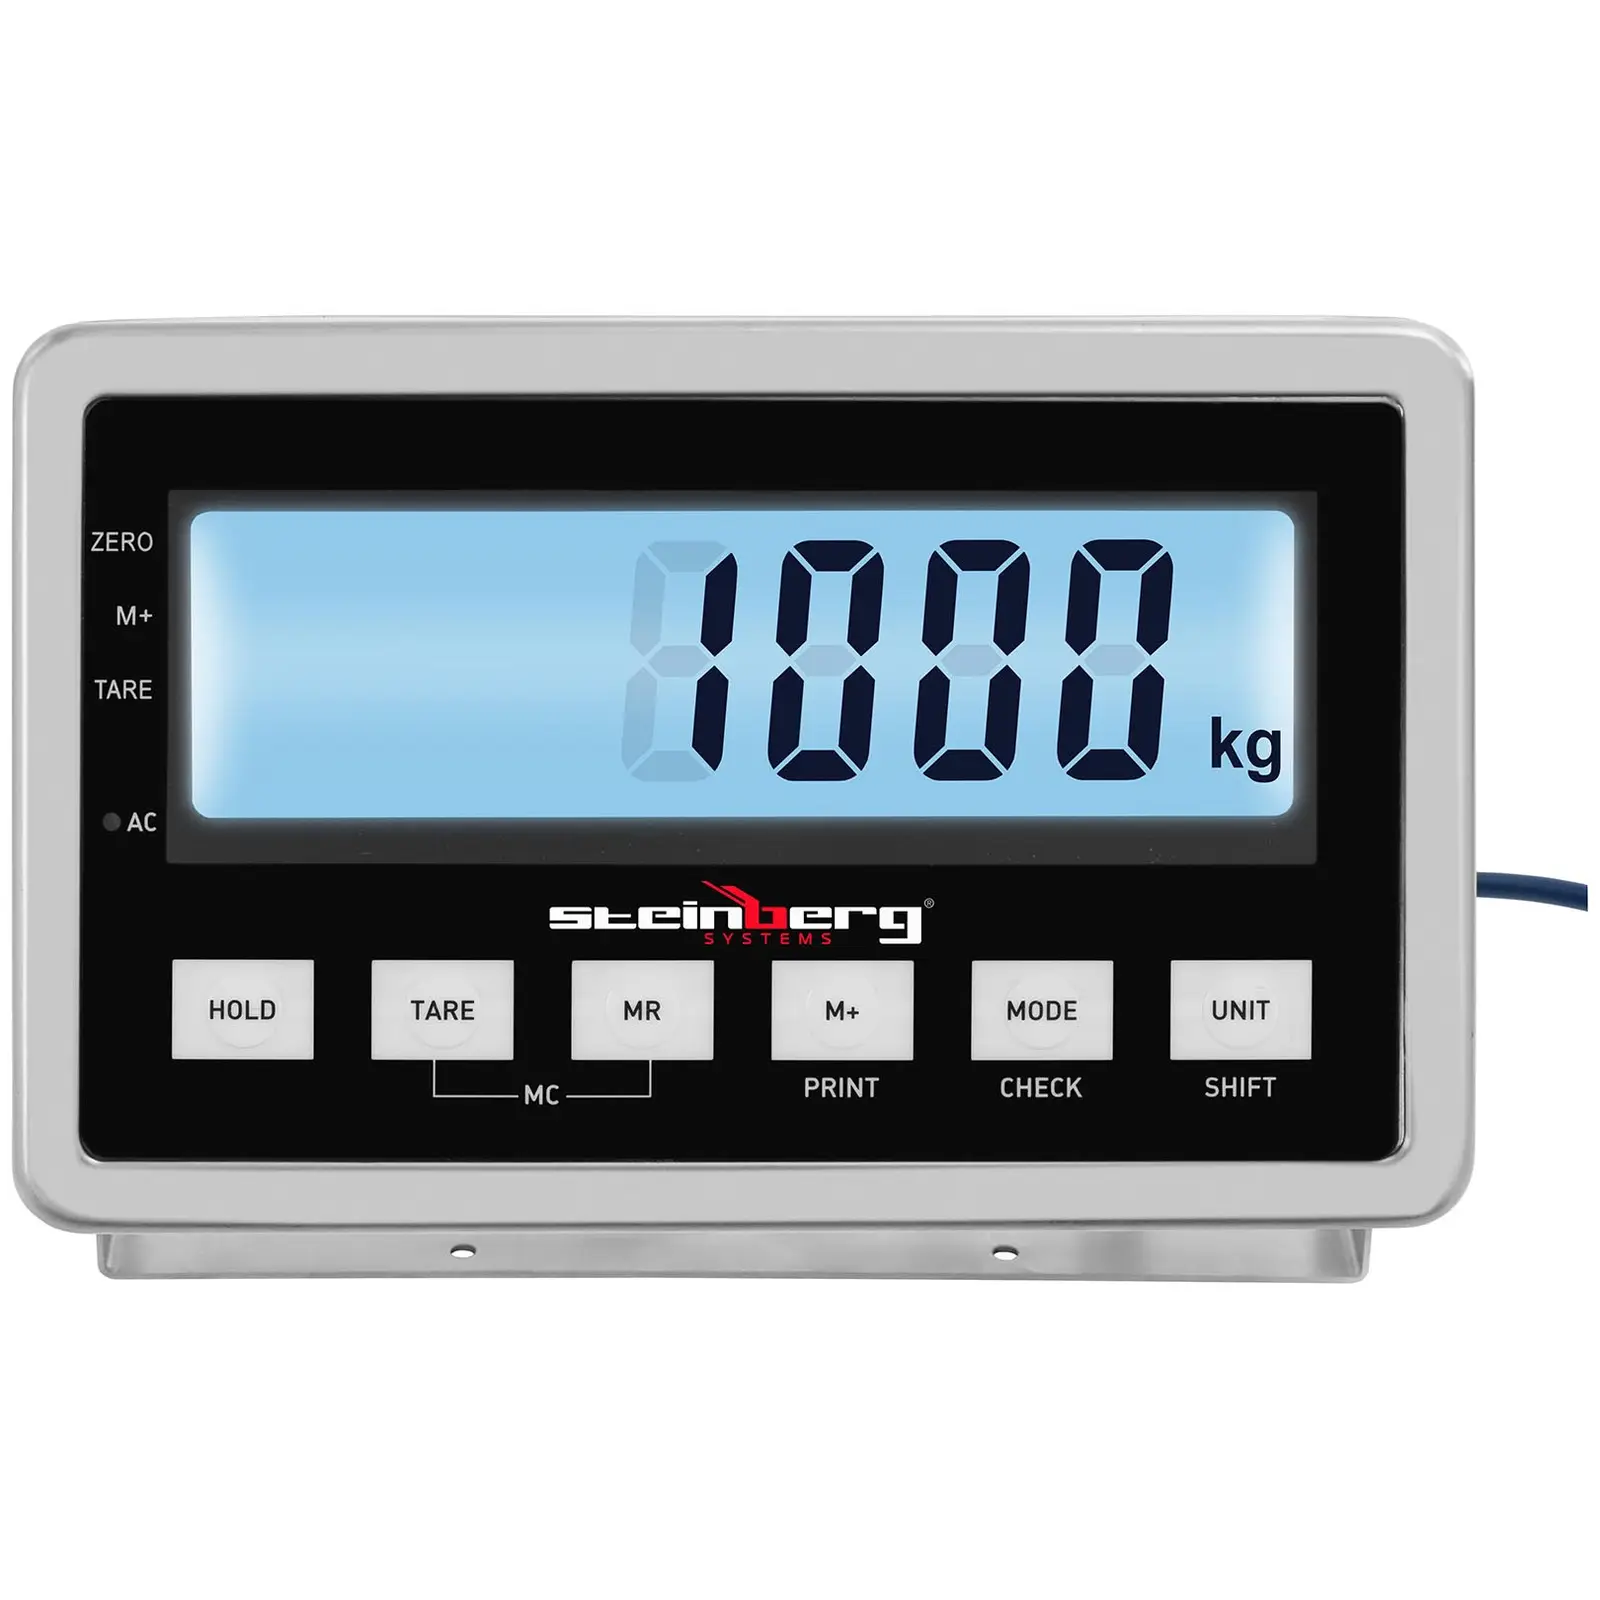 Talna tehtnica - 1000 kg / 0,2 kg - 1000 x 1000 mm - LCD